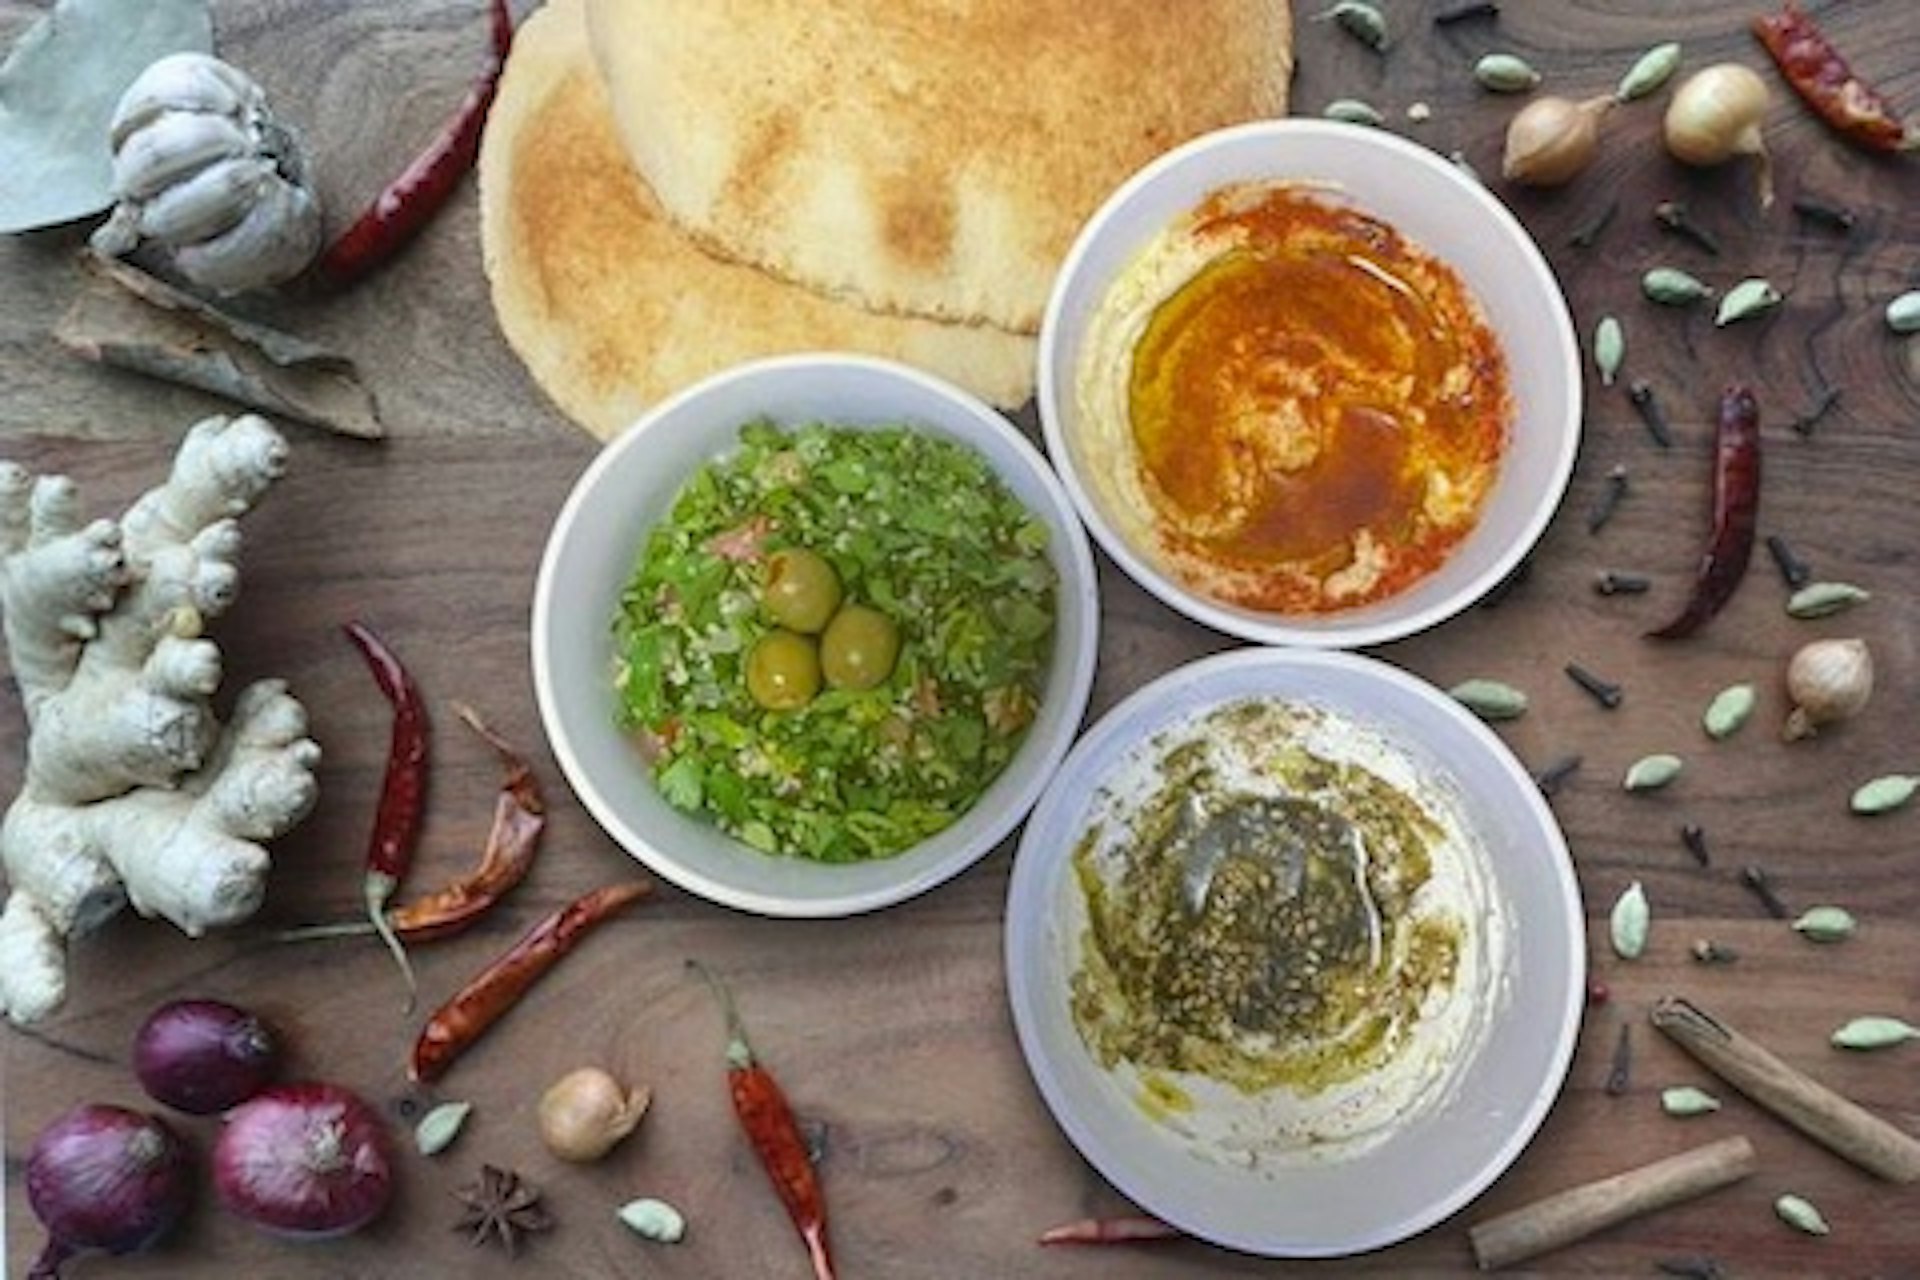 Appetizer Platter (Hummus, Tabbouleh, Cucumber Dip)